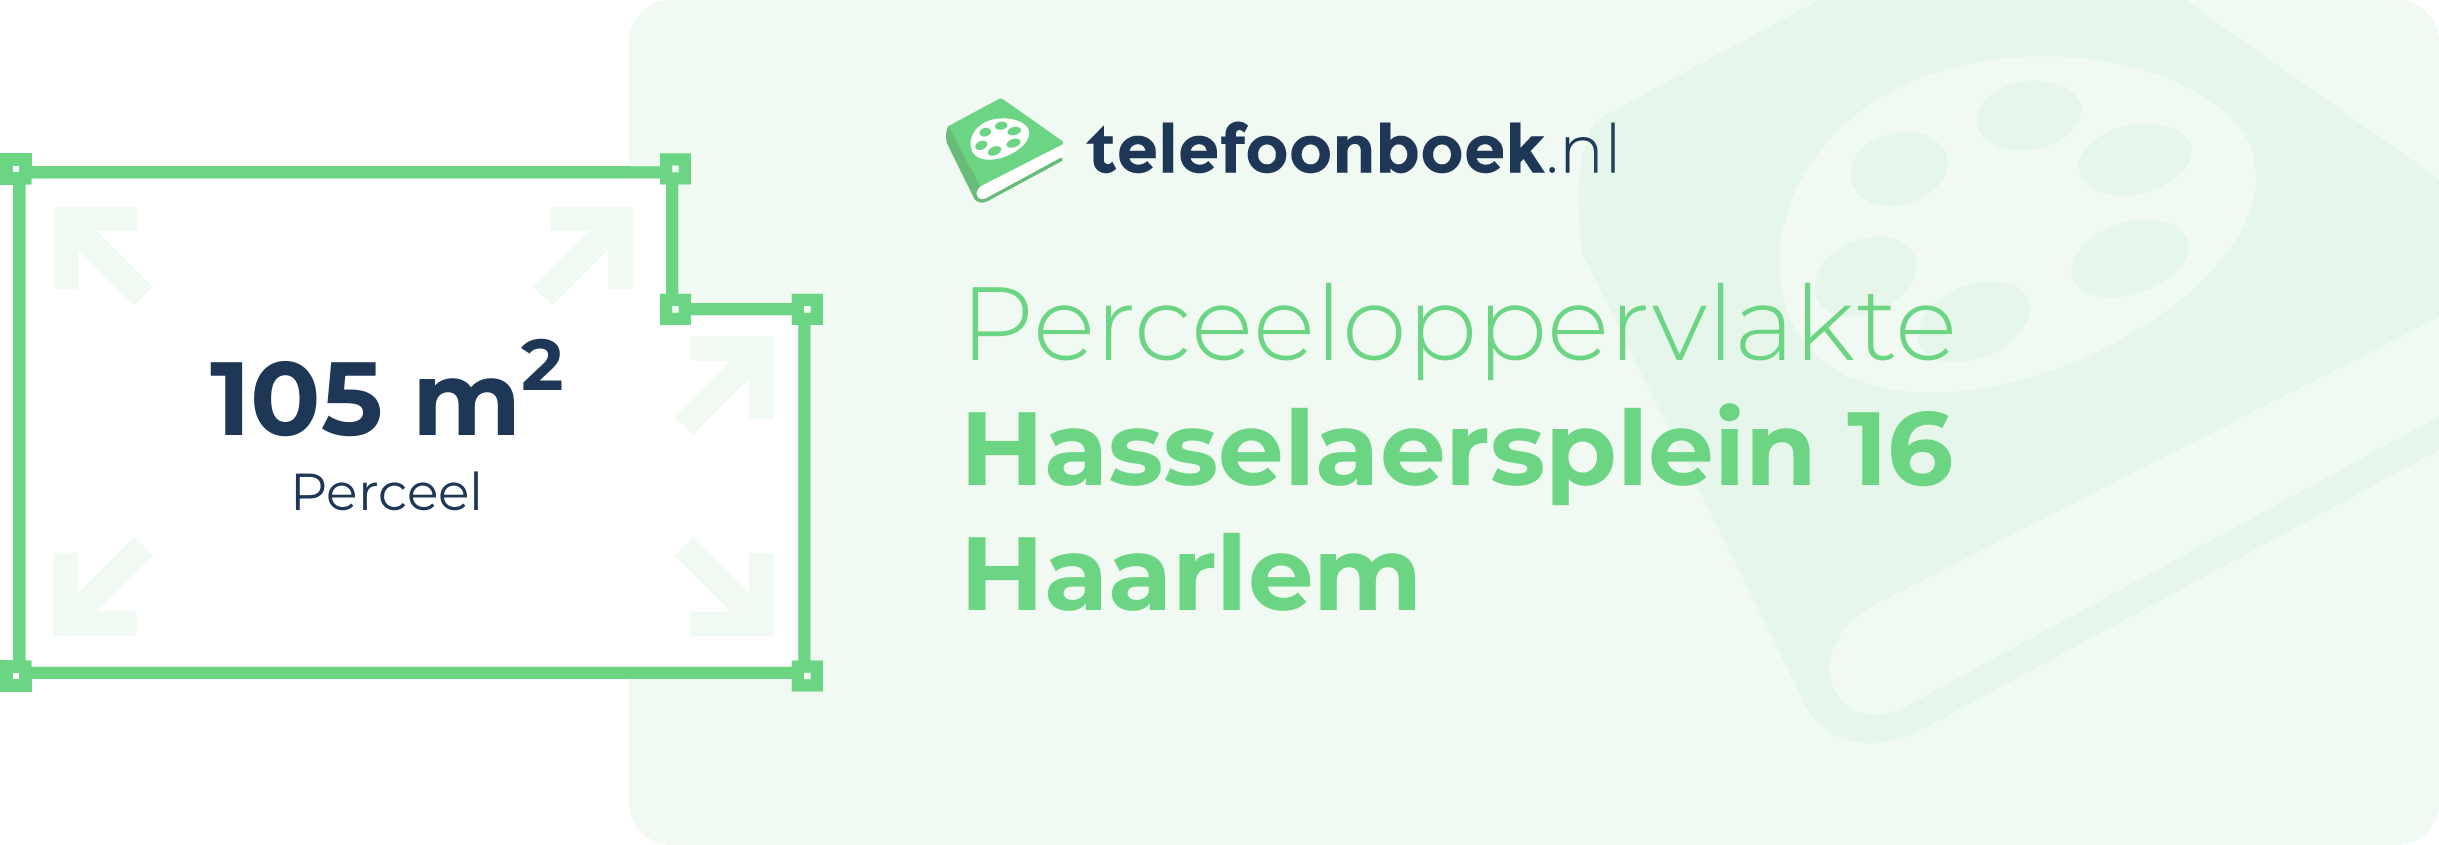 Perceeloppervlakte Hasselaersplein 16 Haarlem